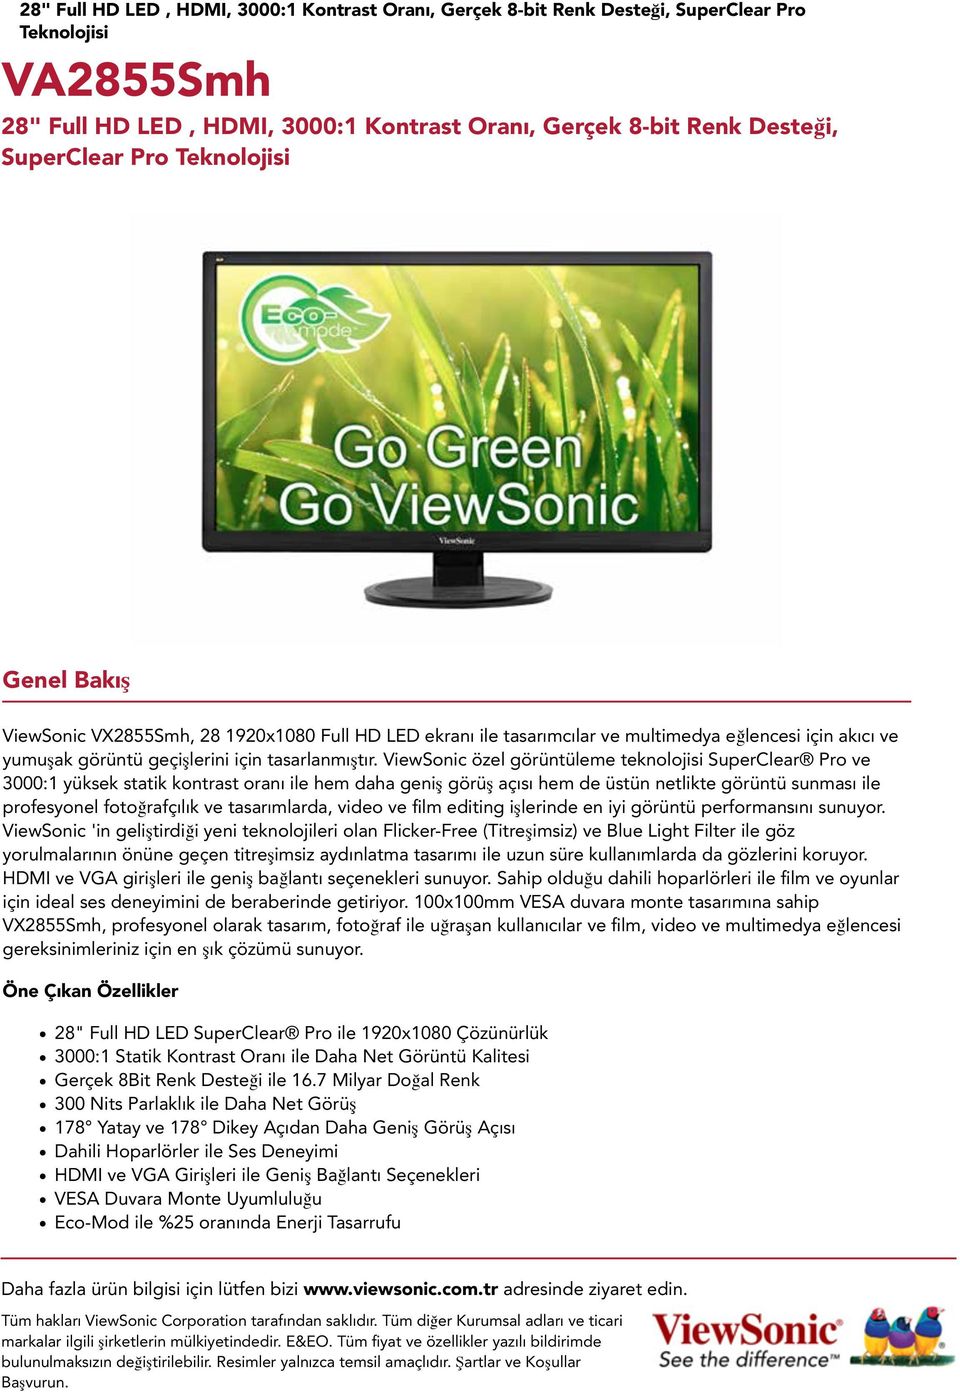 ViewSonic özel görüntüleme teknolojisi SuperClear Pro ve 3000:1 yüksek statik kontrast oranı ile hem daha geniş görüş açısı hem de üstün netlikte görüntü sunması ile profesyonel fotoğrafçılık ve